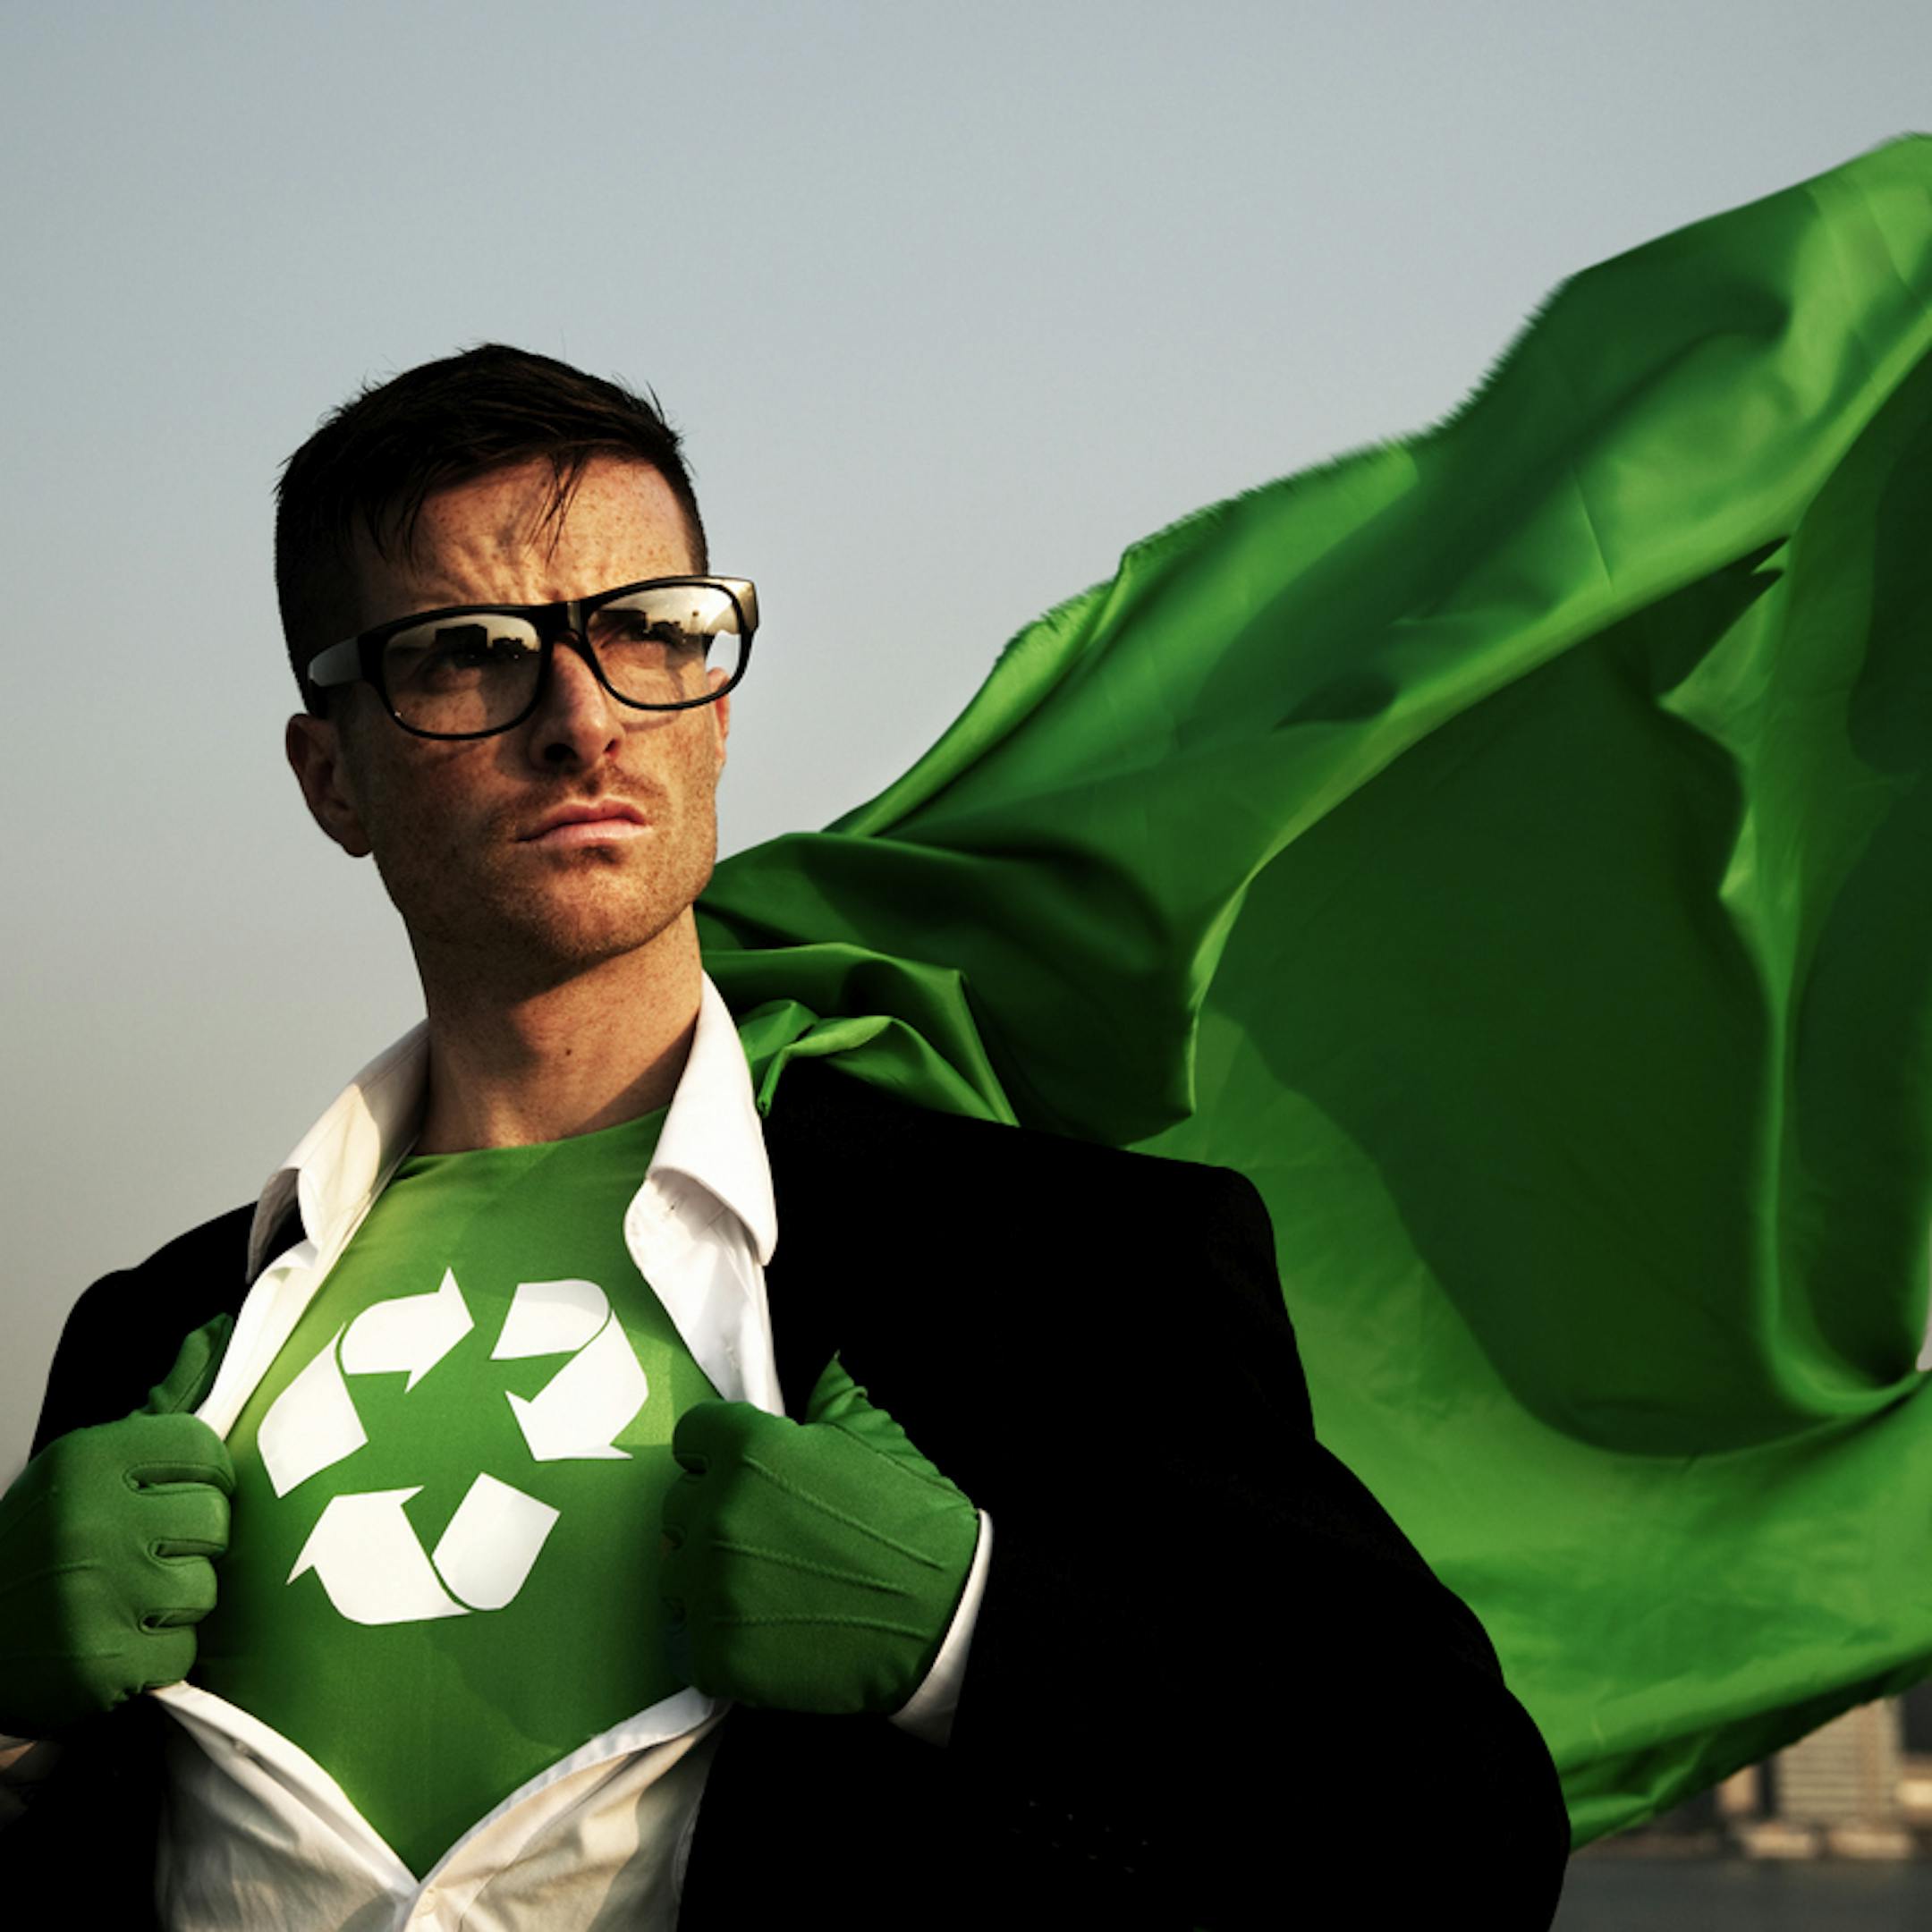 Monsieur habillé en superhéros du recyclage